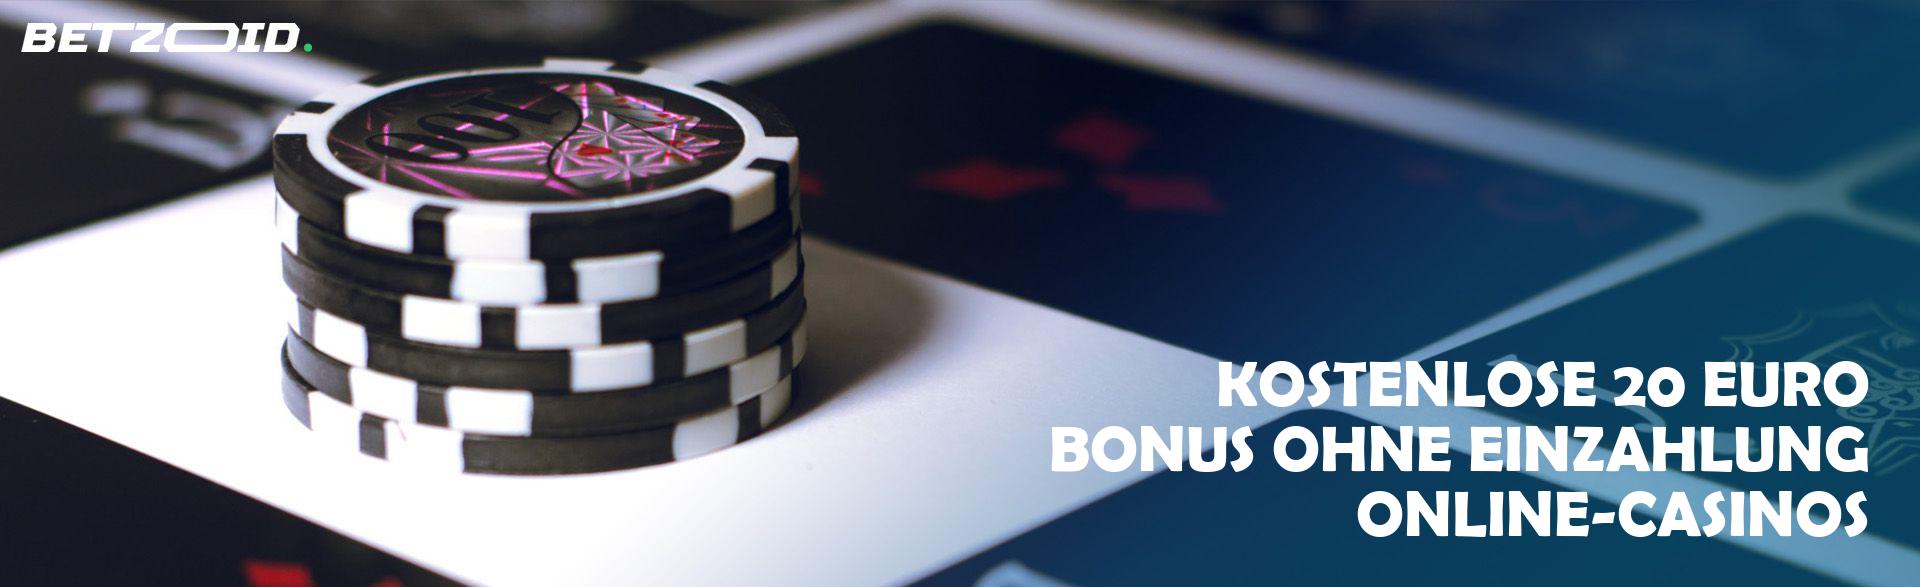 Kostenlose 20 Euro Bonus ohne Einzahlung Online-Casinos.